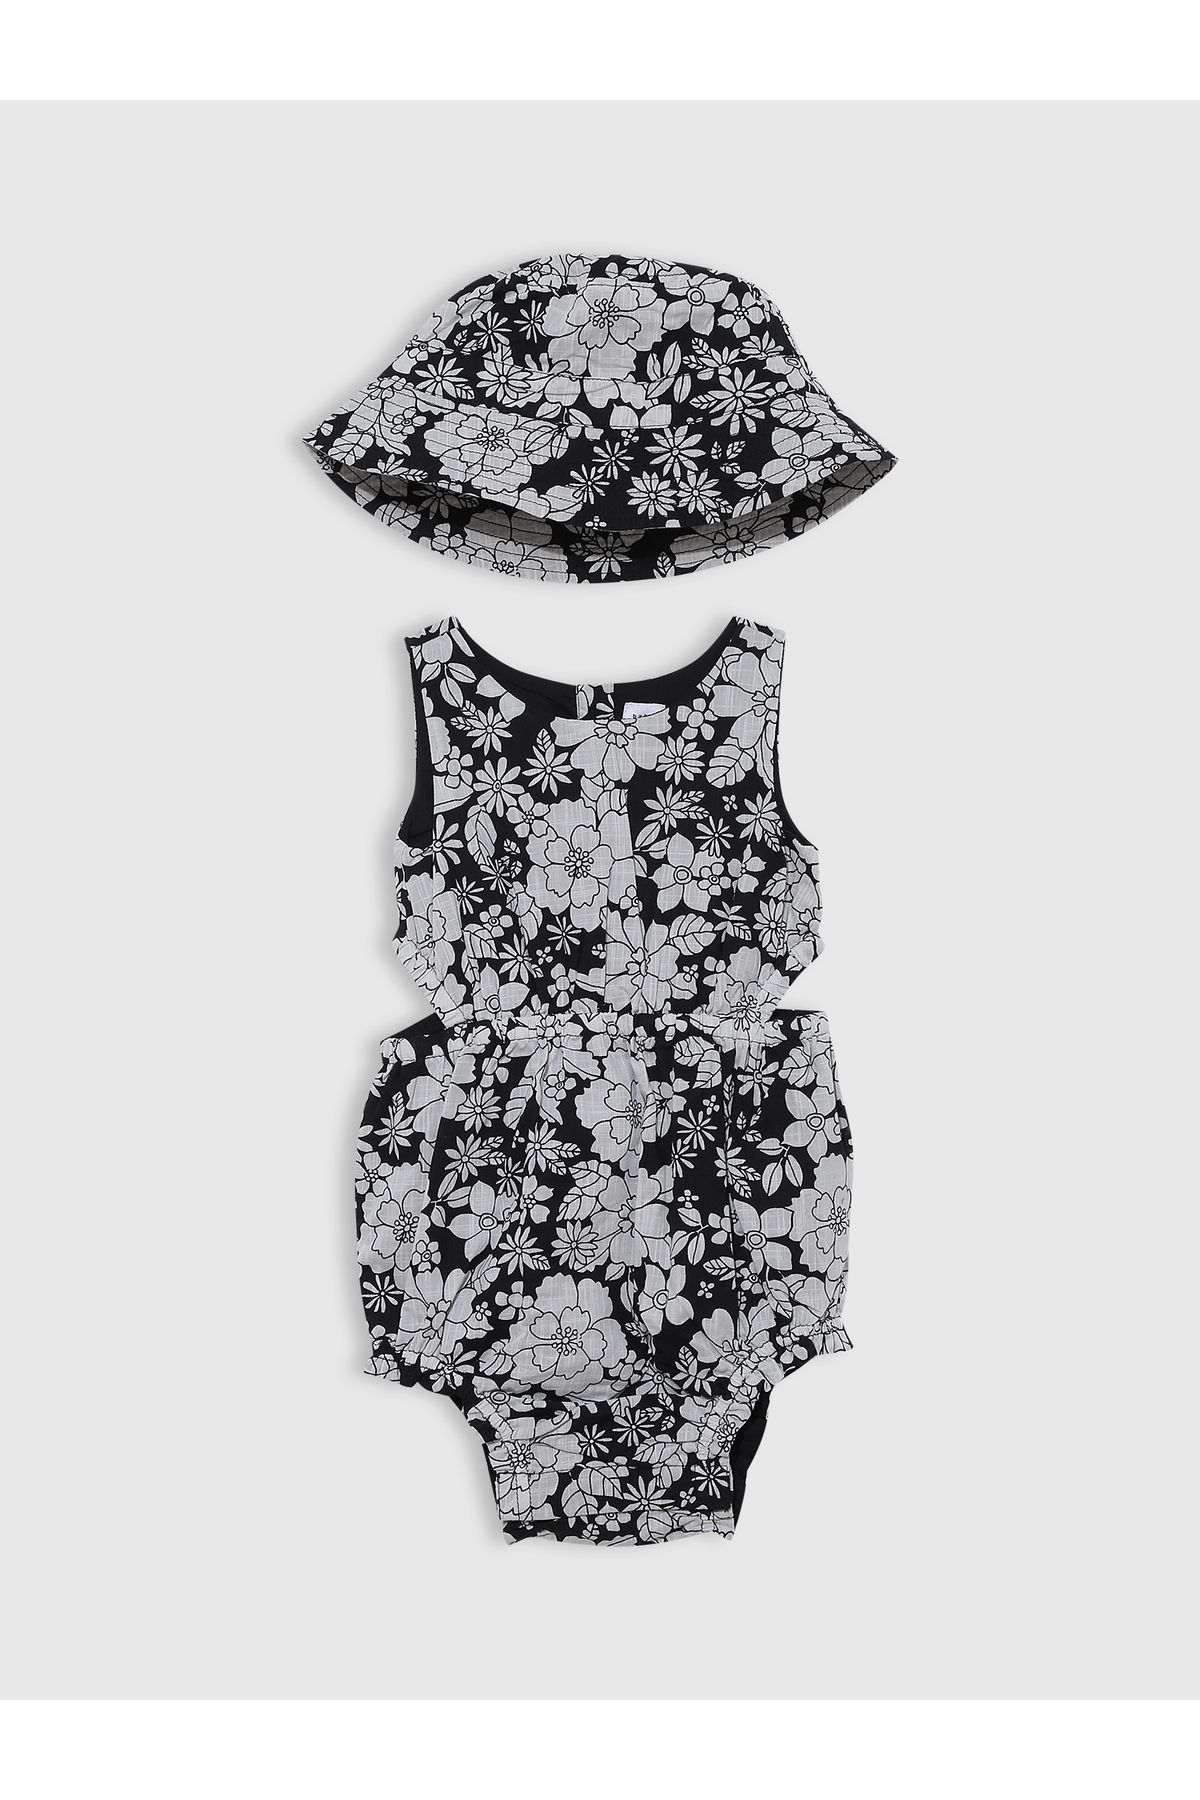 GAP Kız Bebek Siyah Çiçek Desenli Cutout Detaylı Outfit Set